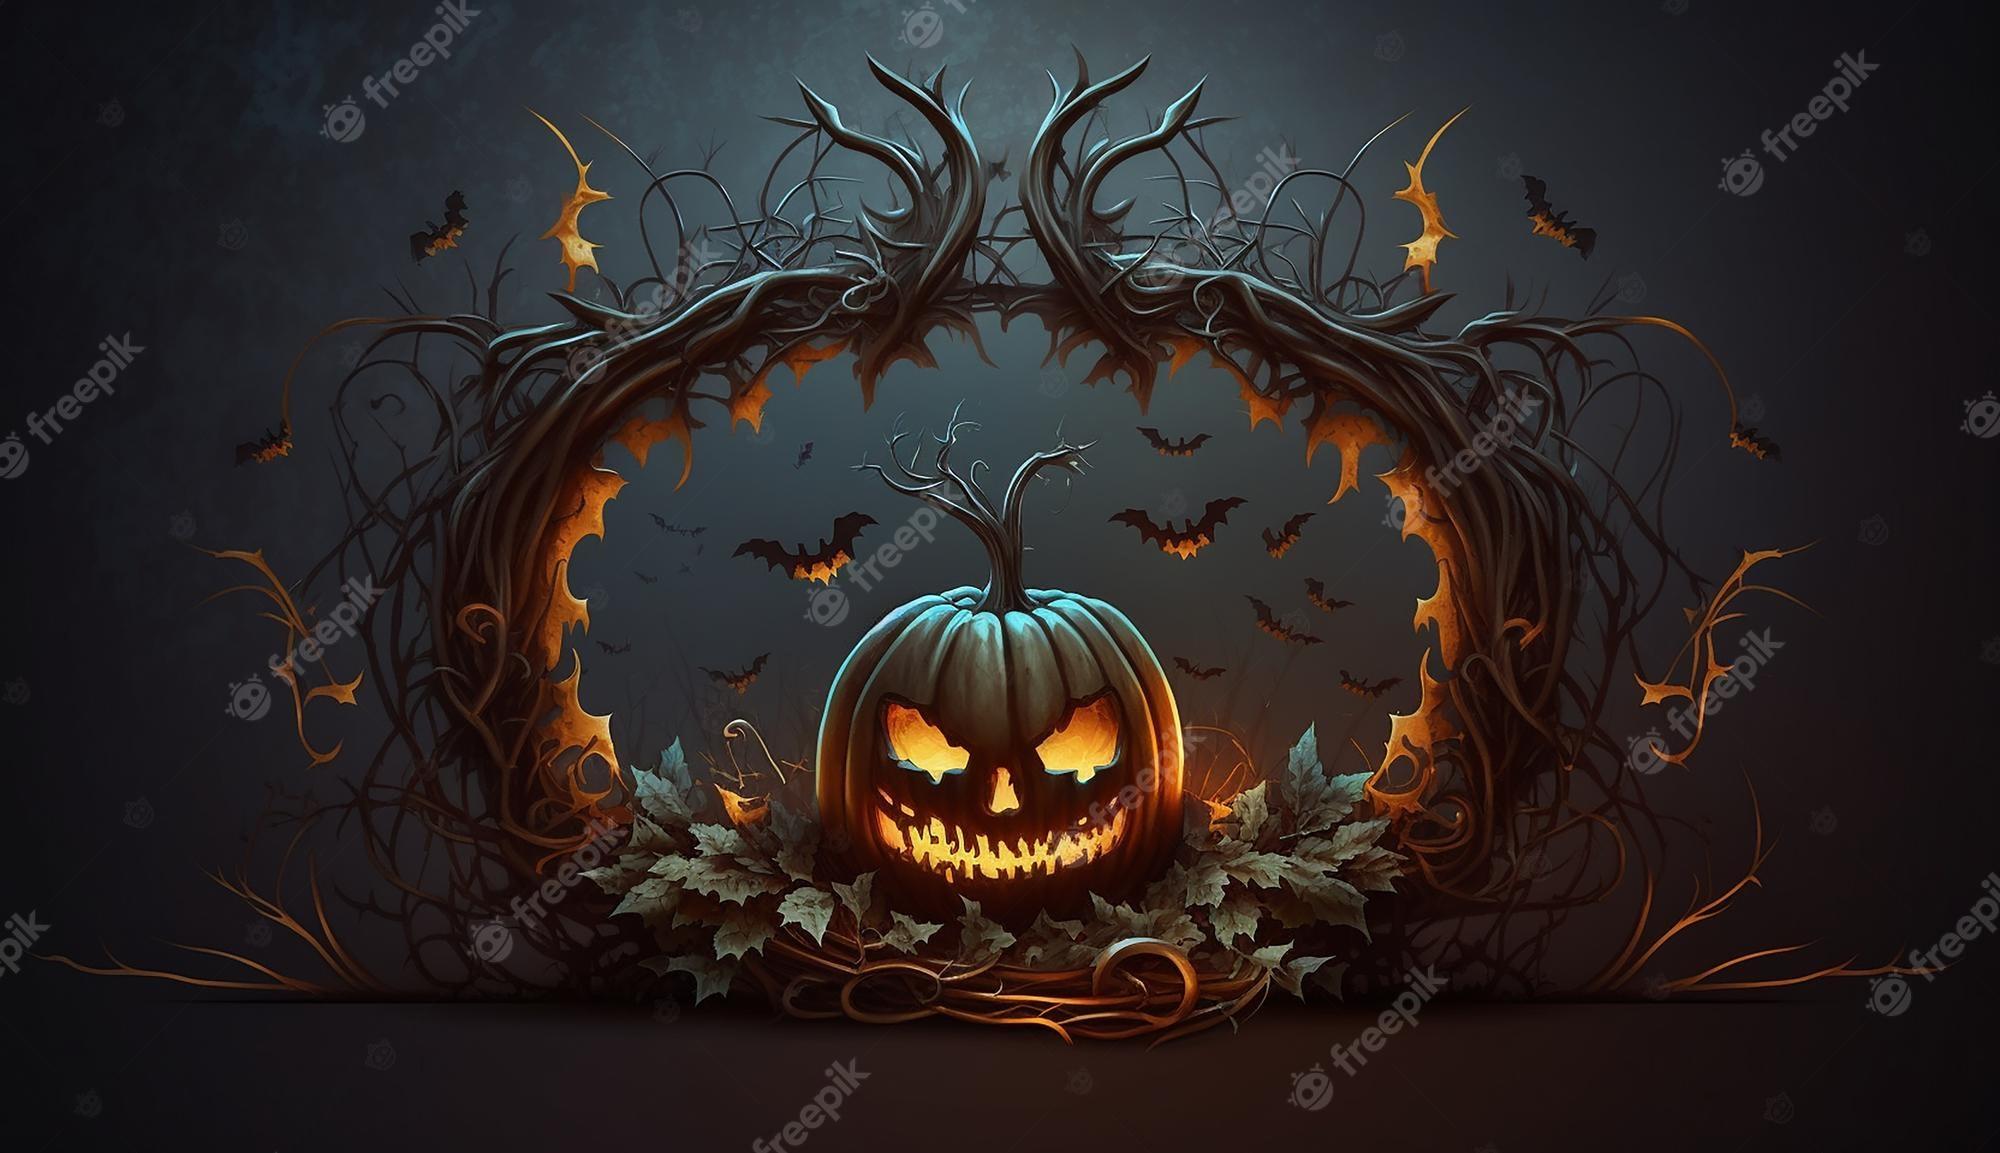 Premium Photo A Halloween Pumpkin With Bats Around It